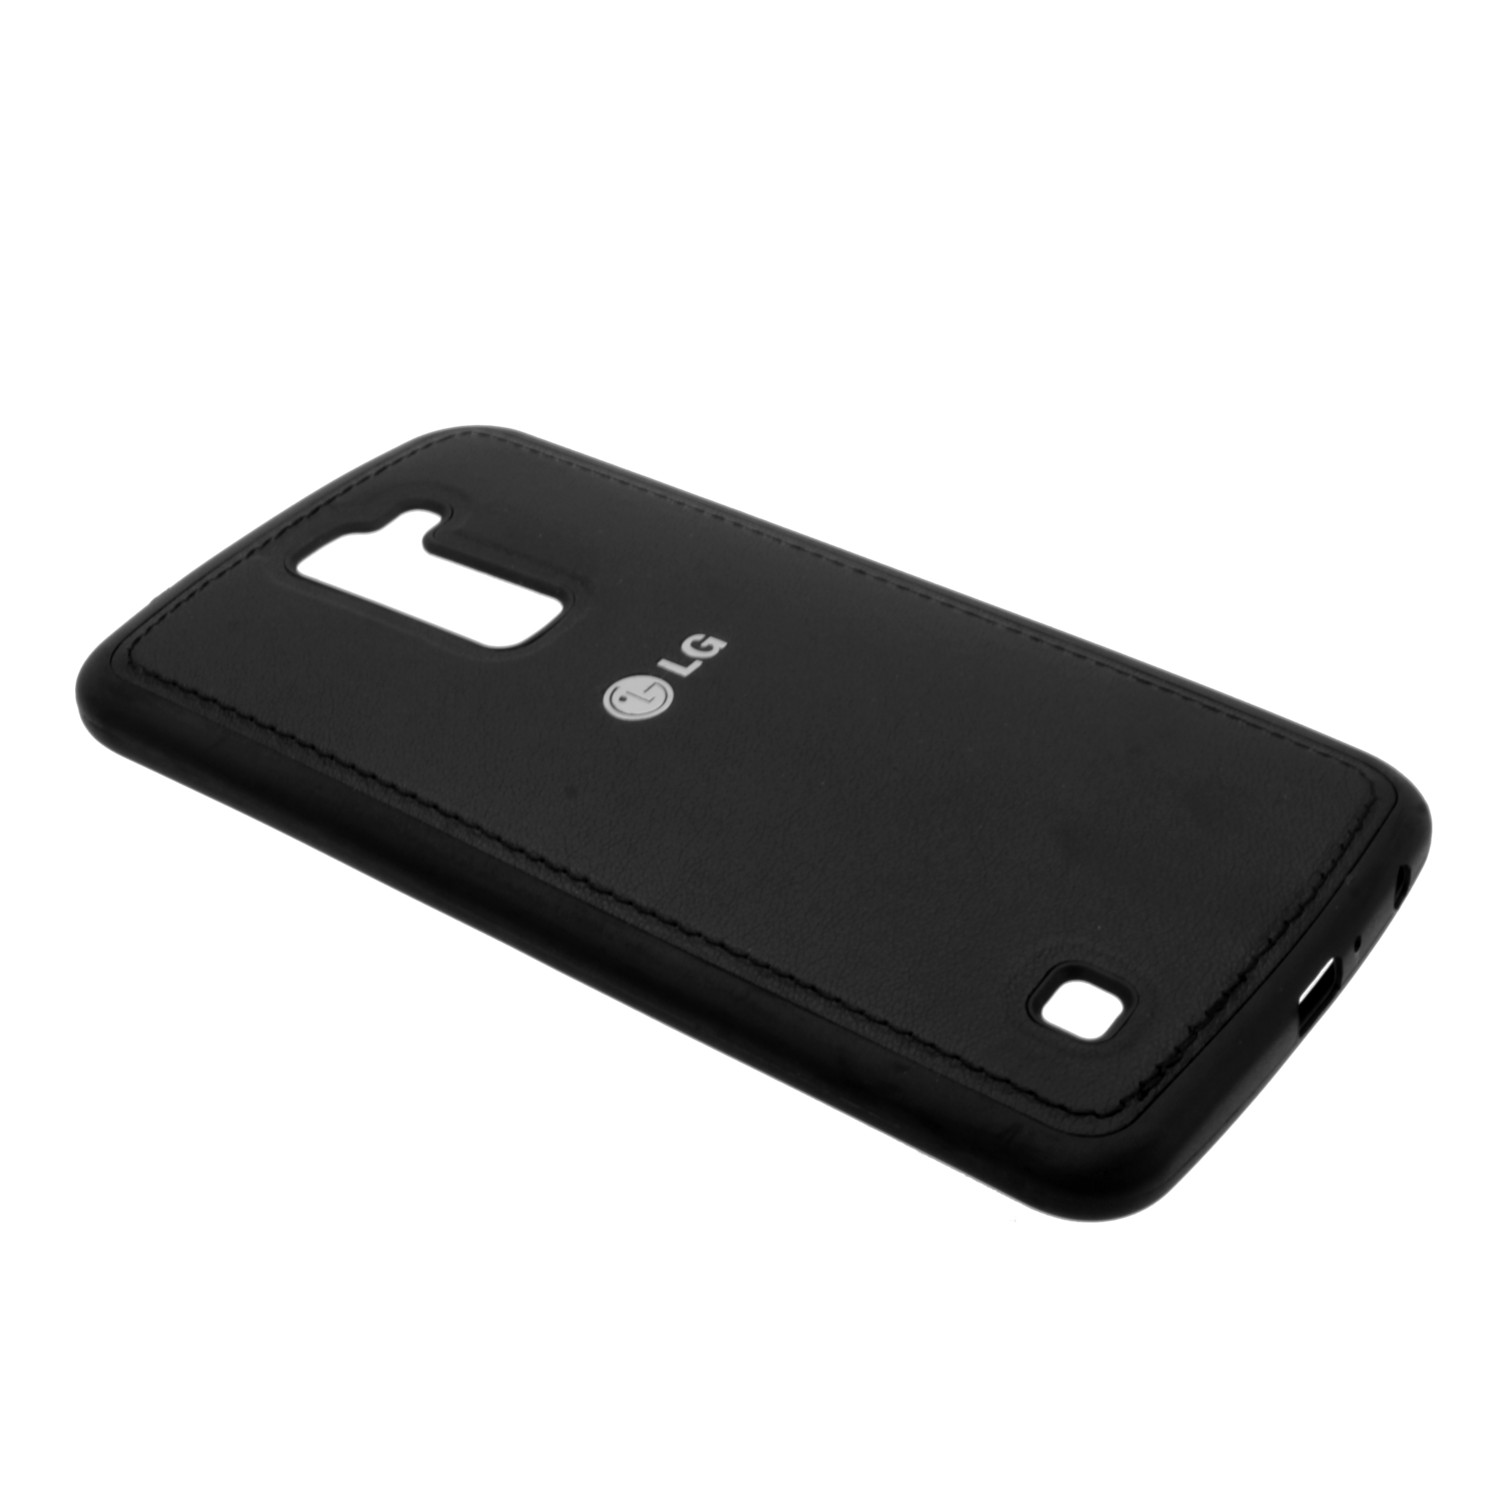 Накладка LG K10/K410 резиновая под кожу с логотипом черная